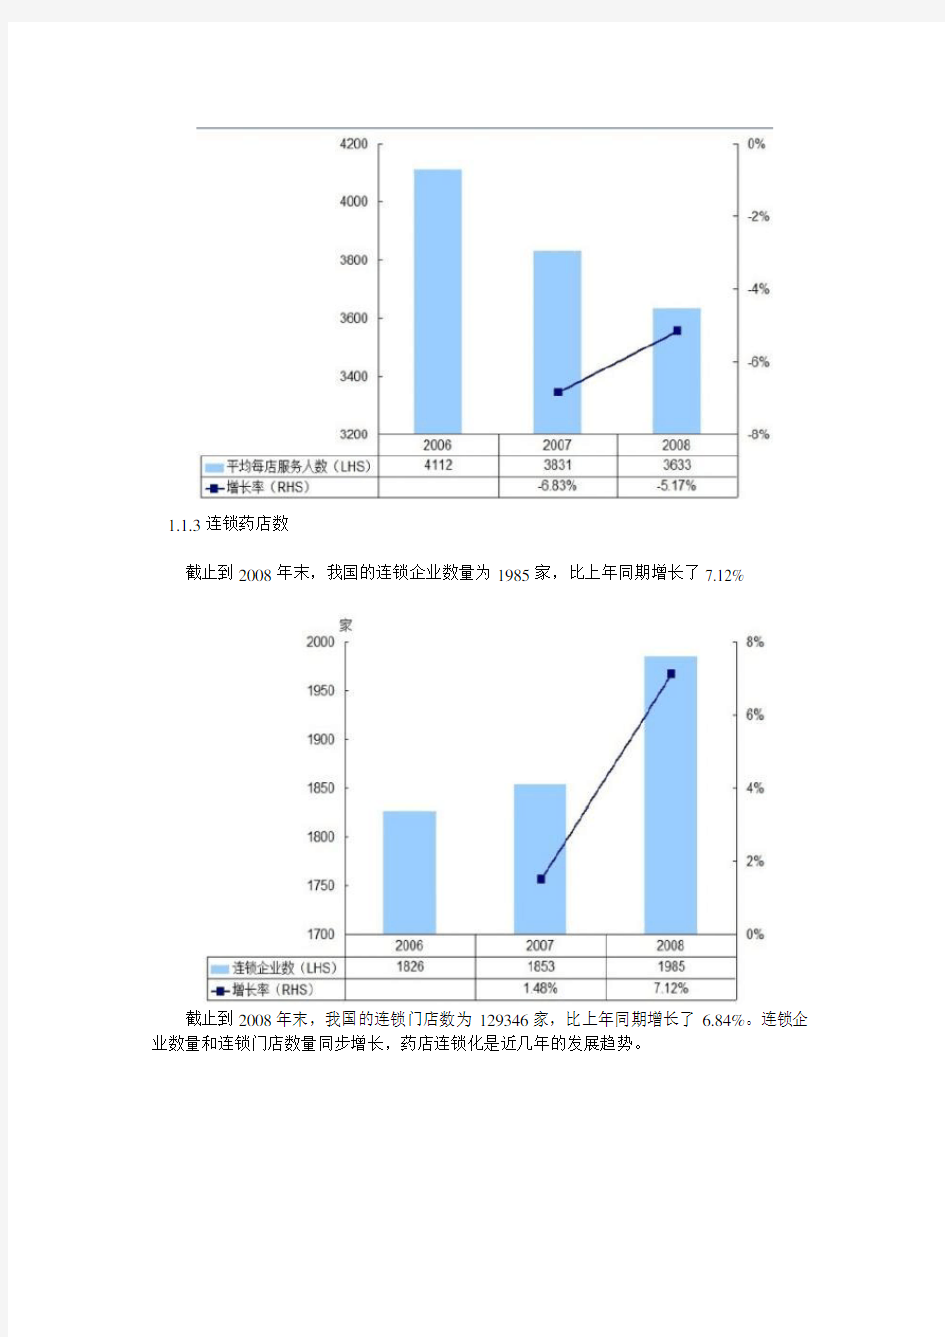 中国医药市场数据大全